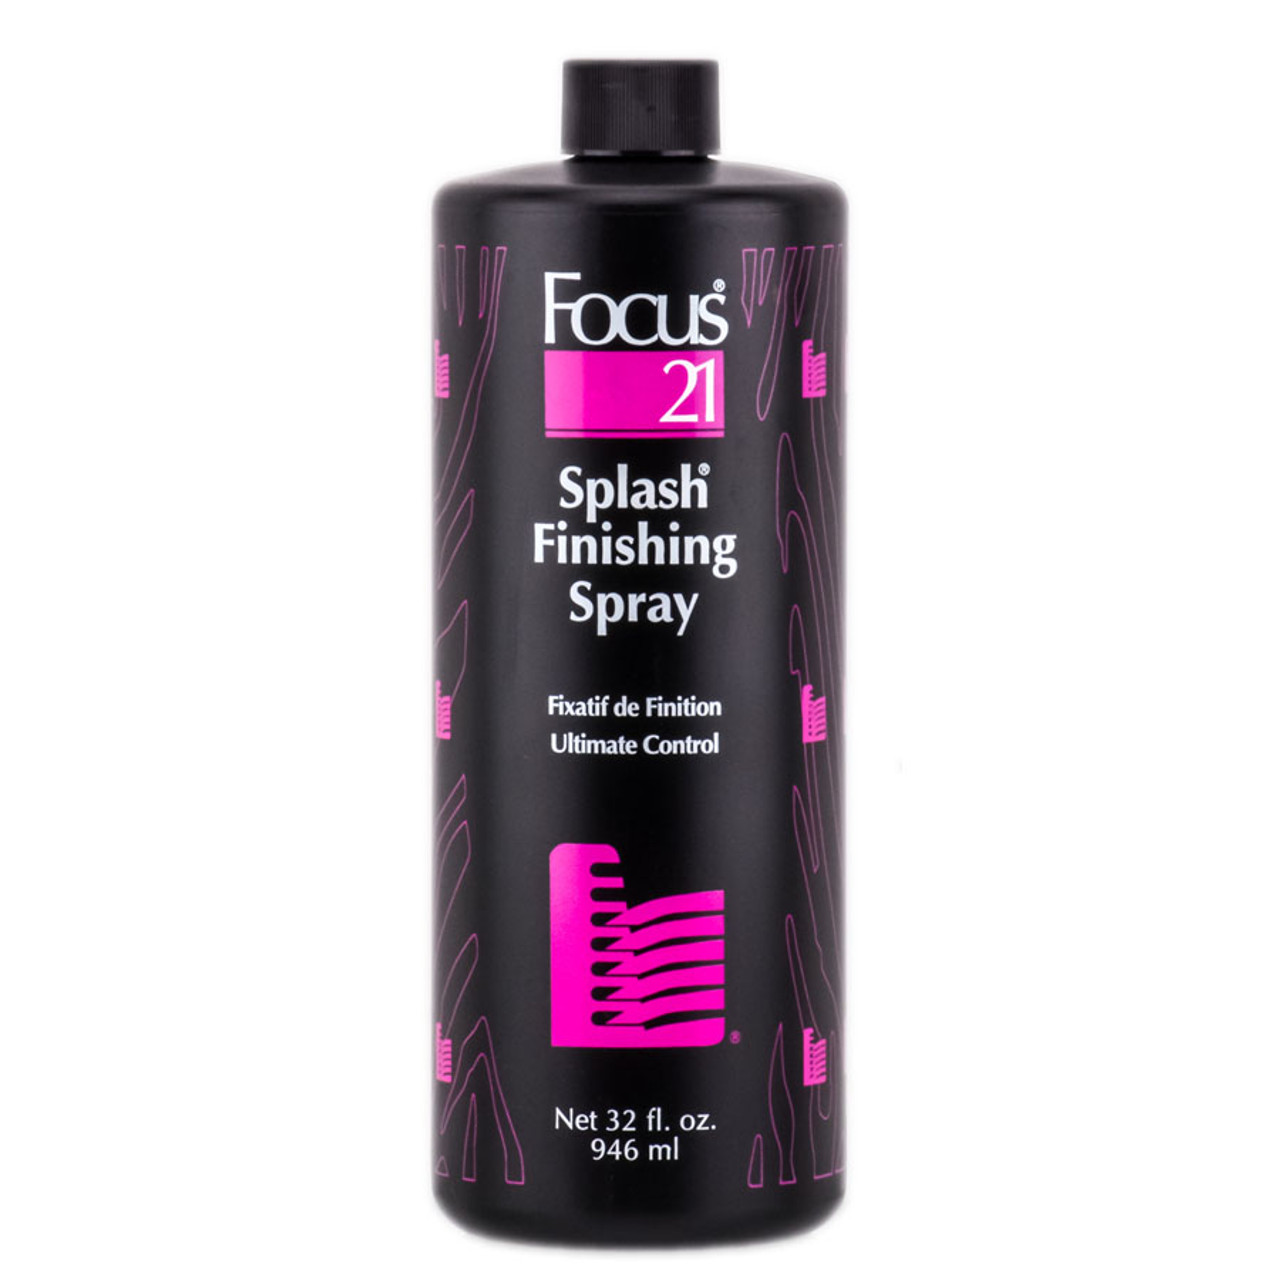 Aqua Net Extra Hold Aerosol Hair Spray 11 oz. - Fore Supply Company